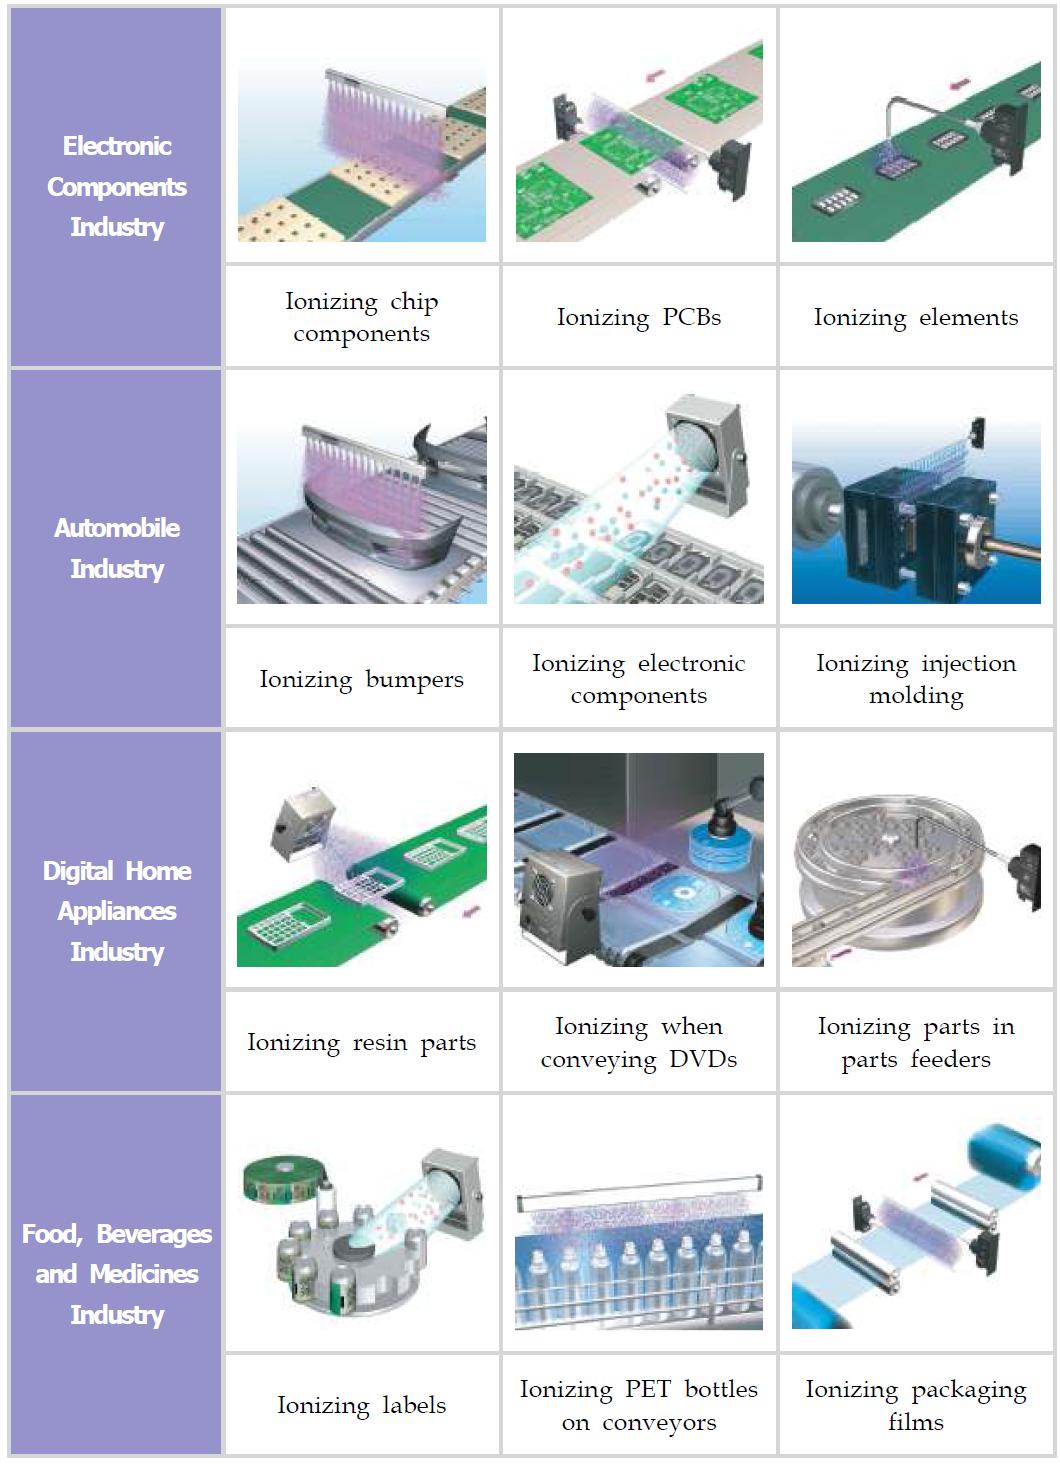 반도체 및 LCD 등 전자 부품 산업 분야의 제전기 적용 분야